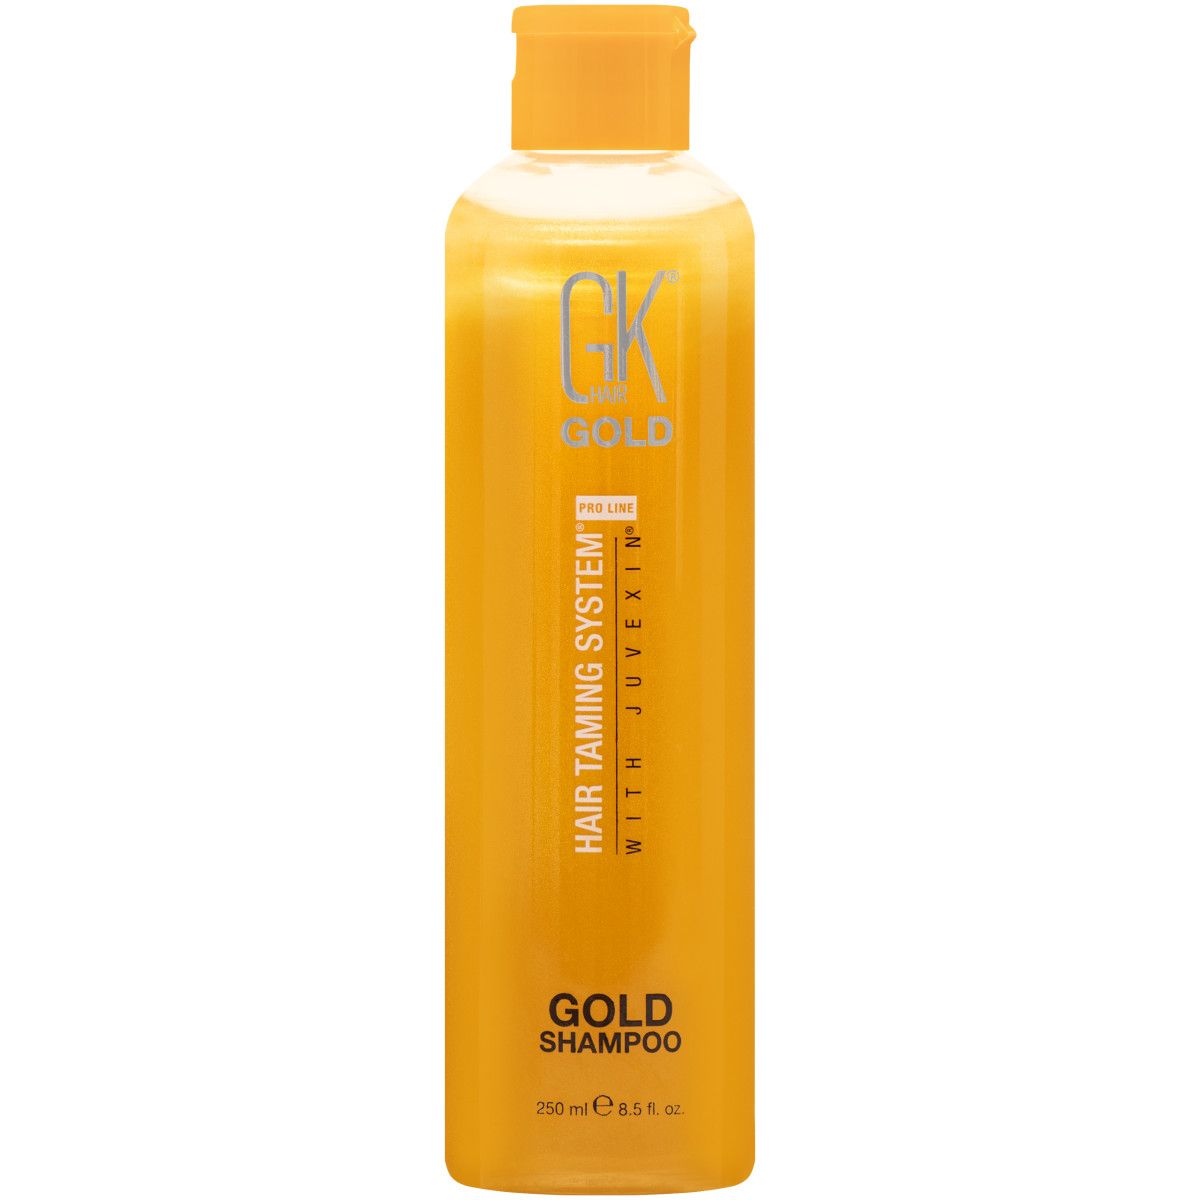 GKHair Gold - głęboko nawilżający szampon do włosów, 250ml